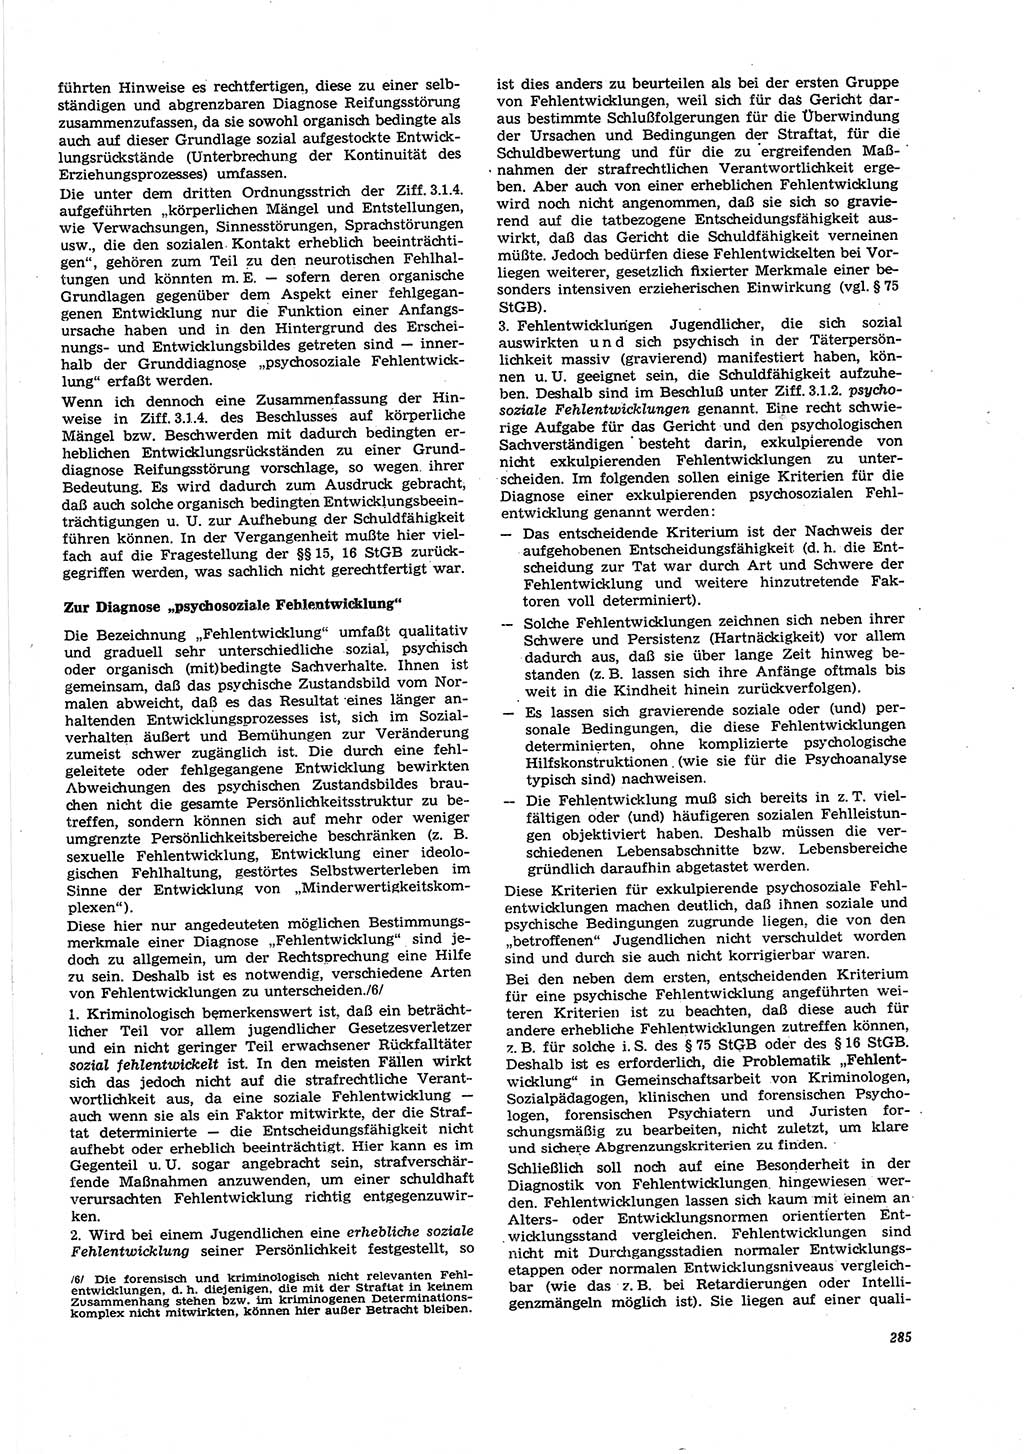 Neue Justiz (NJ), Zeitschrift für Recht und Rechtswissenschaft [Deutsche Demokratische Republik (DDR)], 27. Jahrgang 1973, Seite 285 (NJ DDR 1973, S. 285)